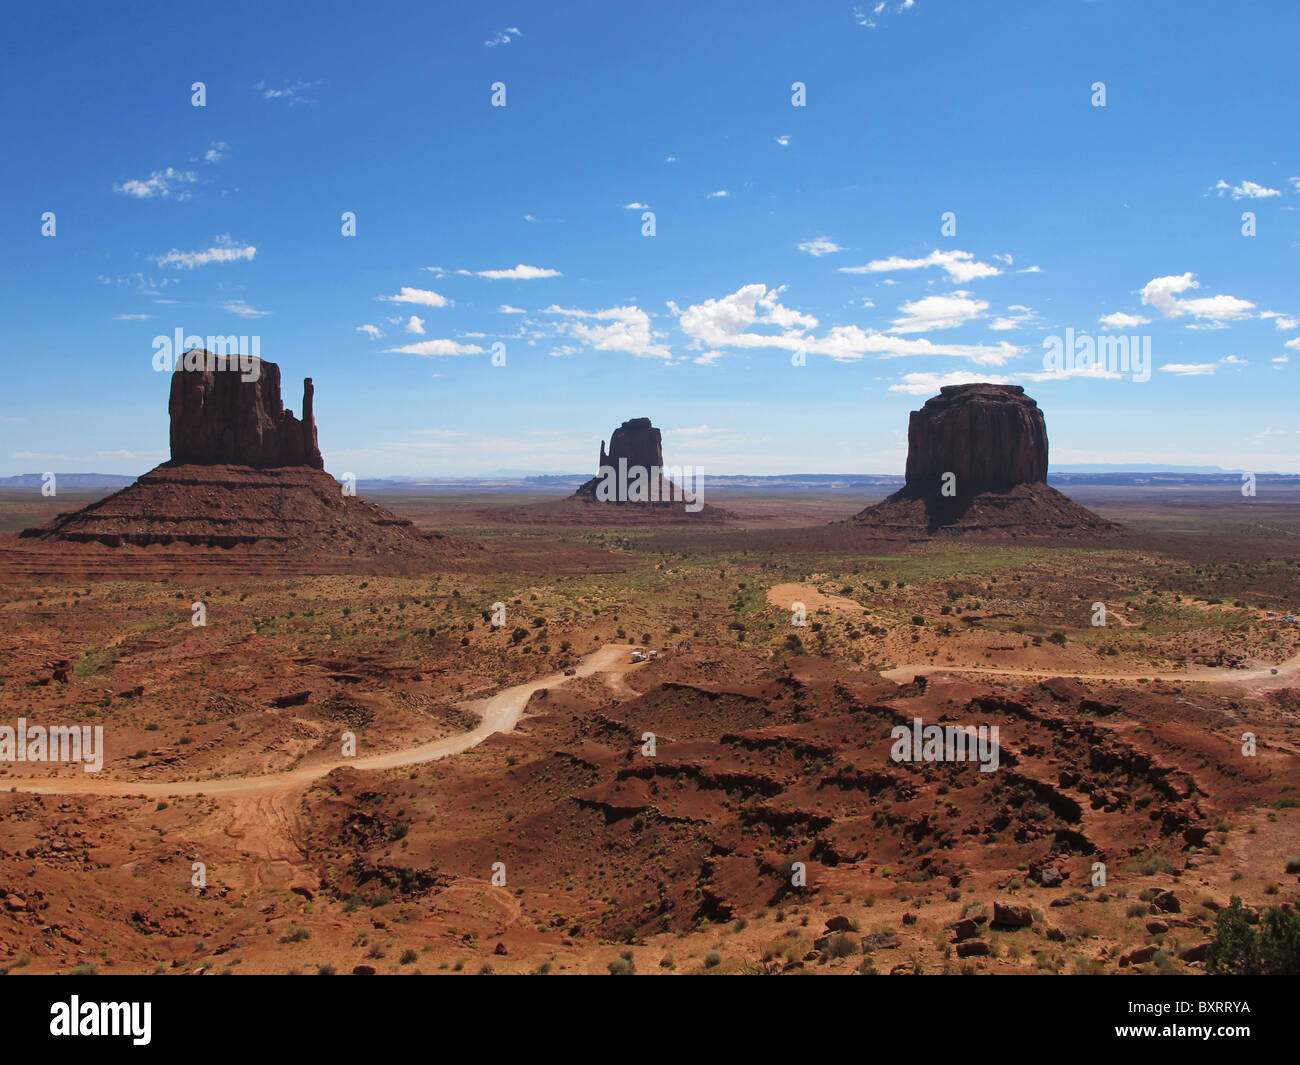 Mitten Butte Felsen, Monument Valley Navajo Tribal Park, Arizona und Utah, Vereinigte Staaten von Amerika, Nordamerika Stockfoto